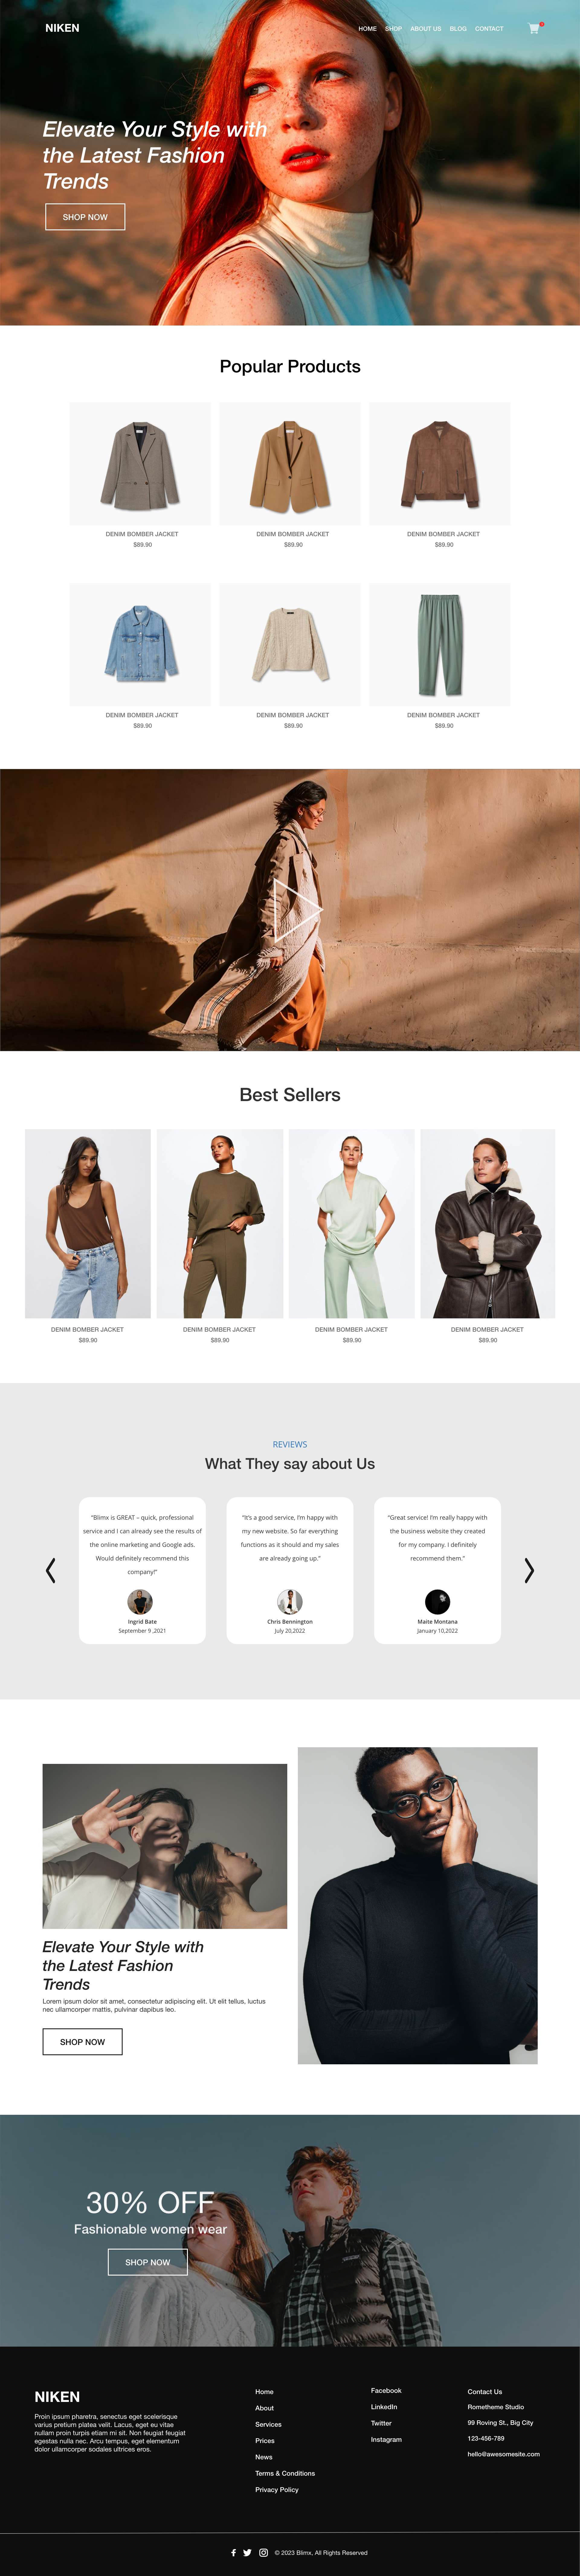 Women's Wear Website Design